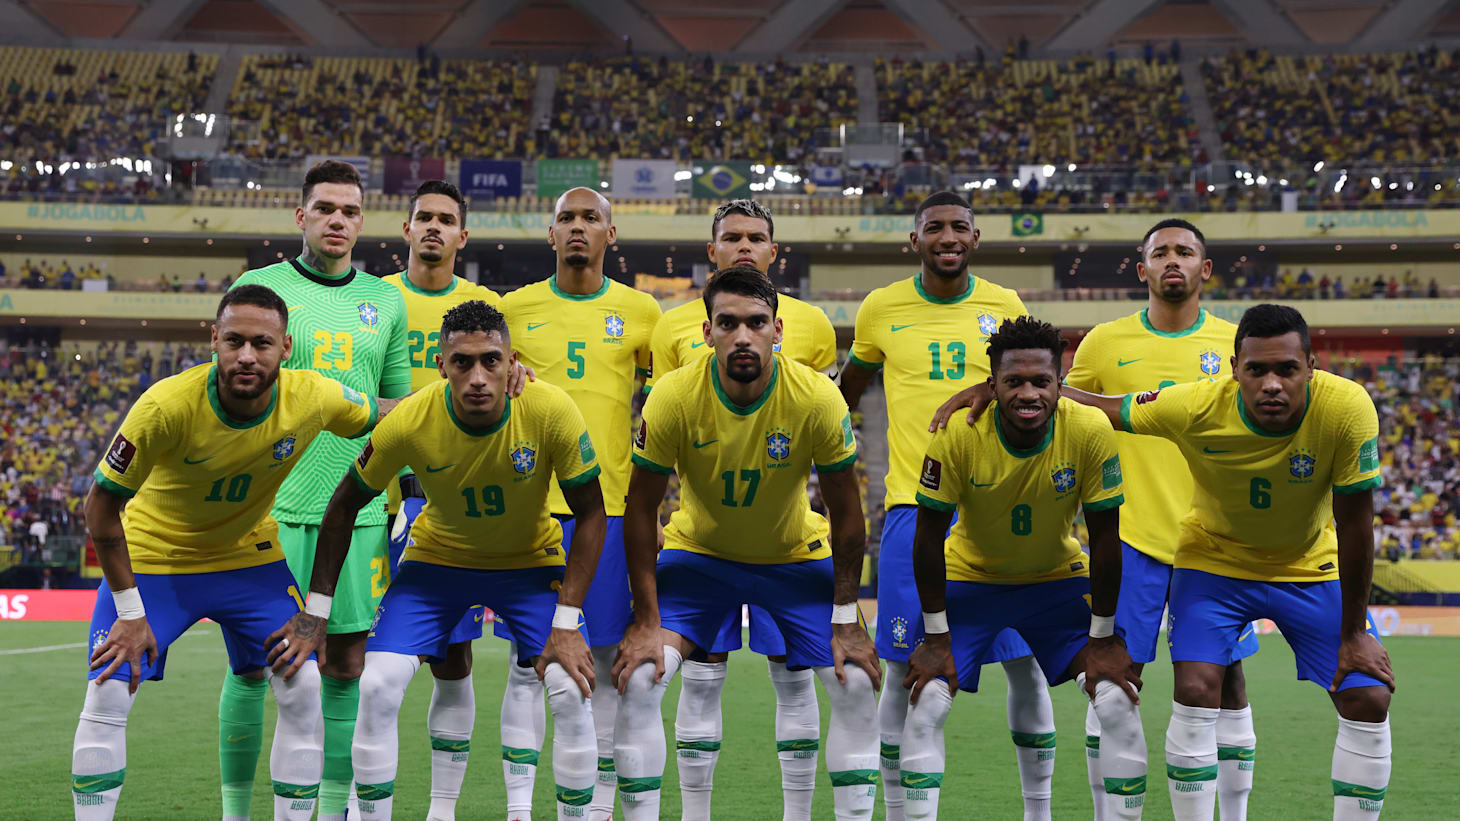 FIFA 18 WORLD CUP RÚSSIA 2018 - O INÍCIO OFICIAL DA COPA DO MUNDO - BRASIL  X SUÍÇA (Português-BR) 